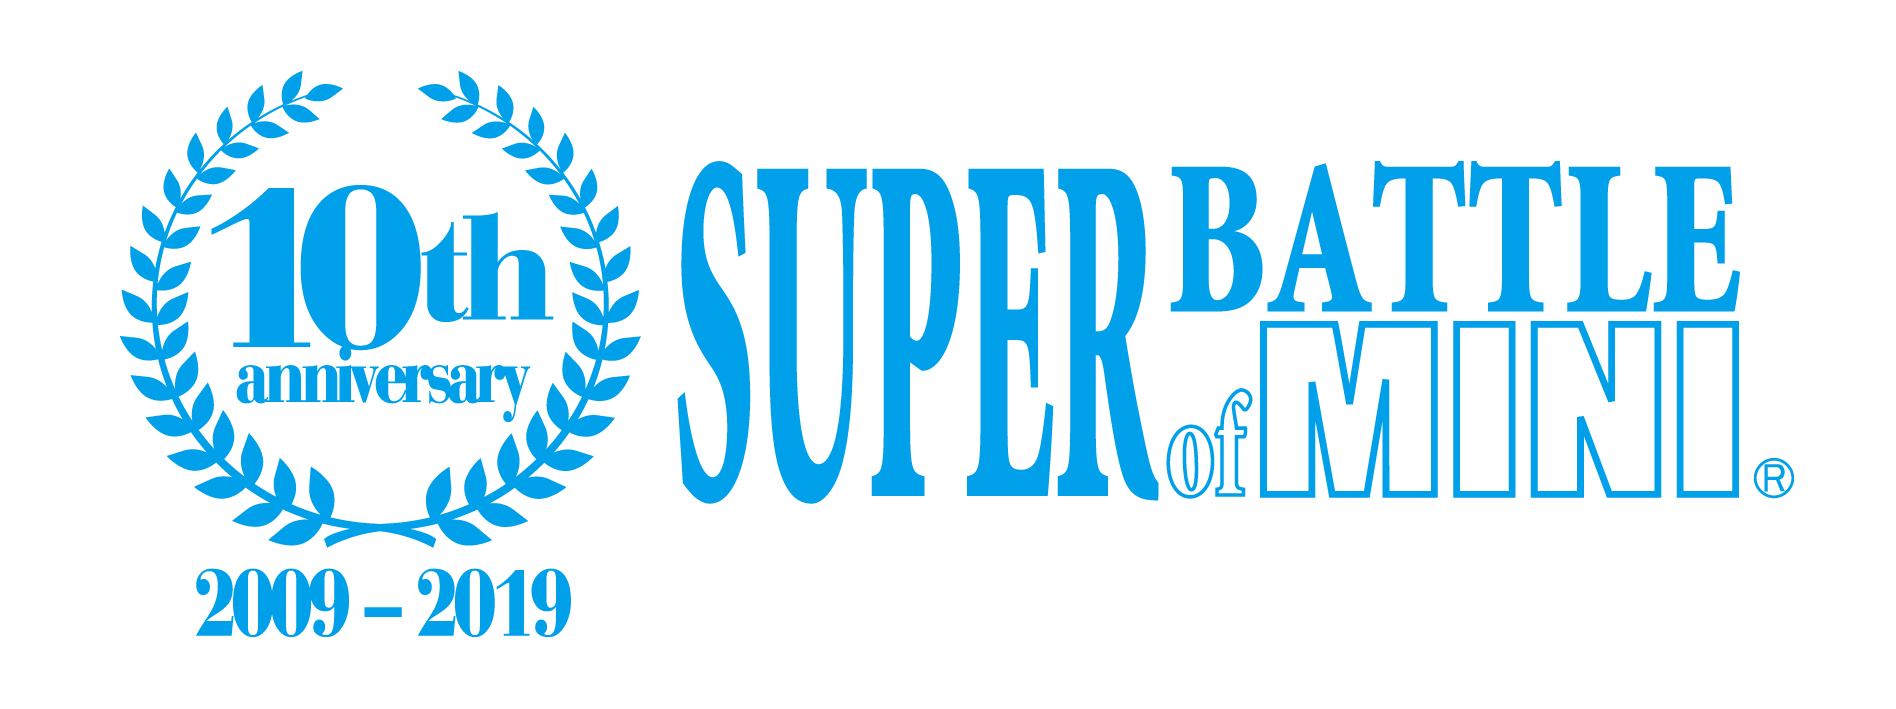 SUPER BATTLE of MINI 第 4 戦 (最終戦) 開催のお知らせ